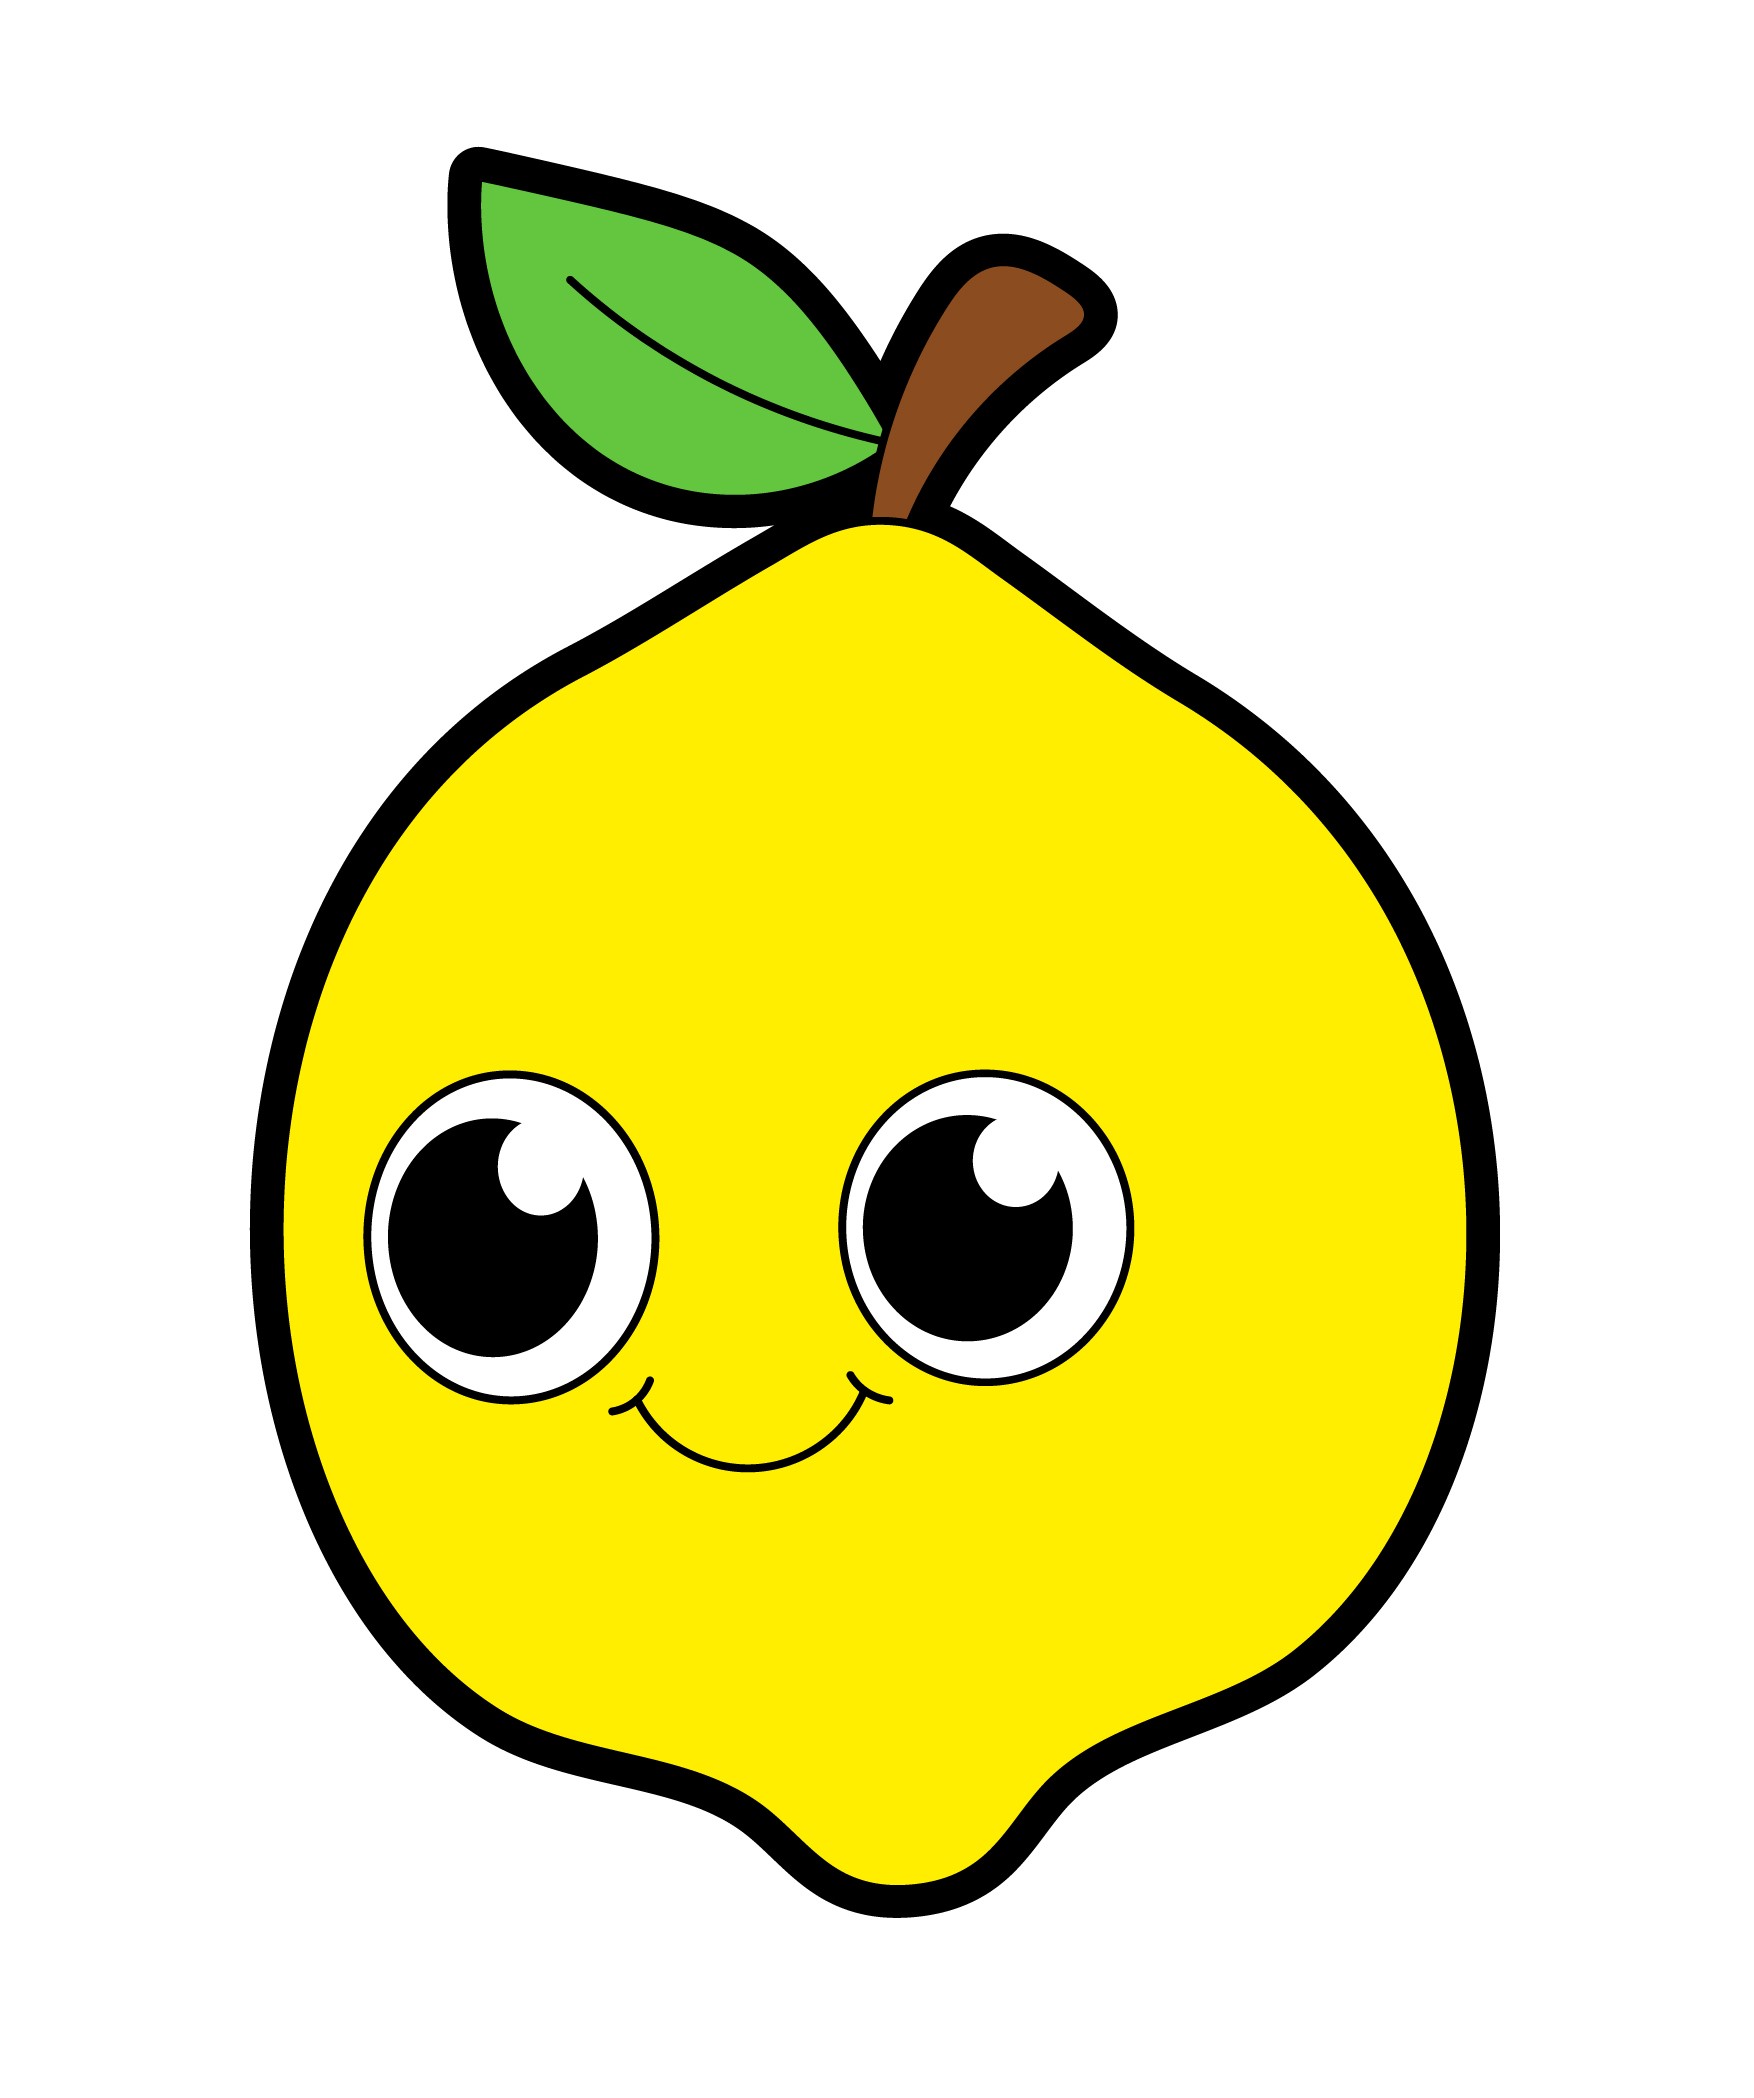 Раскраска лимон с большими глазами формата А4 в высоком качестве